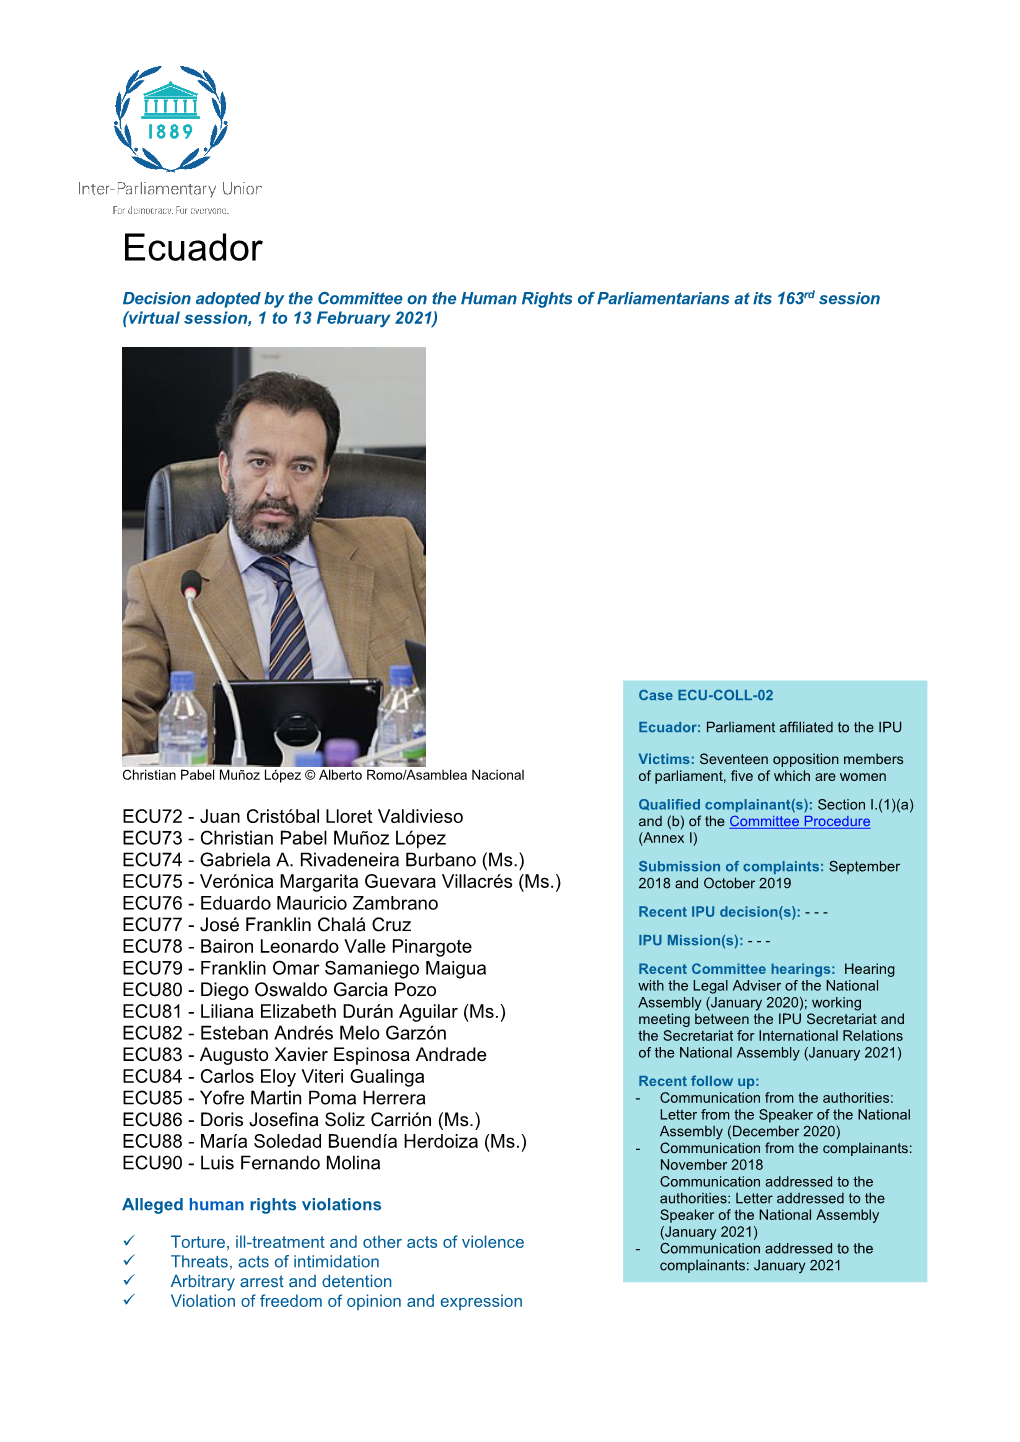 Human Rights Decisions: Ecuador